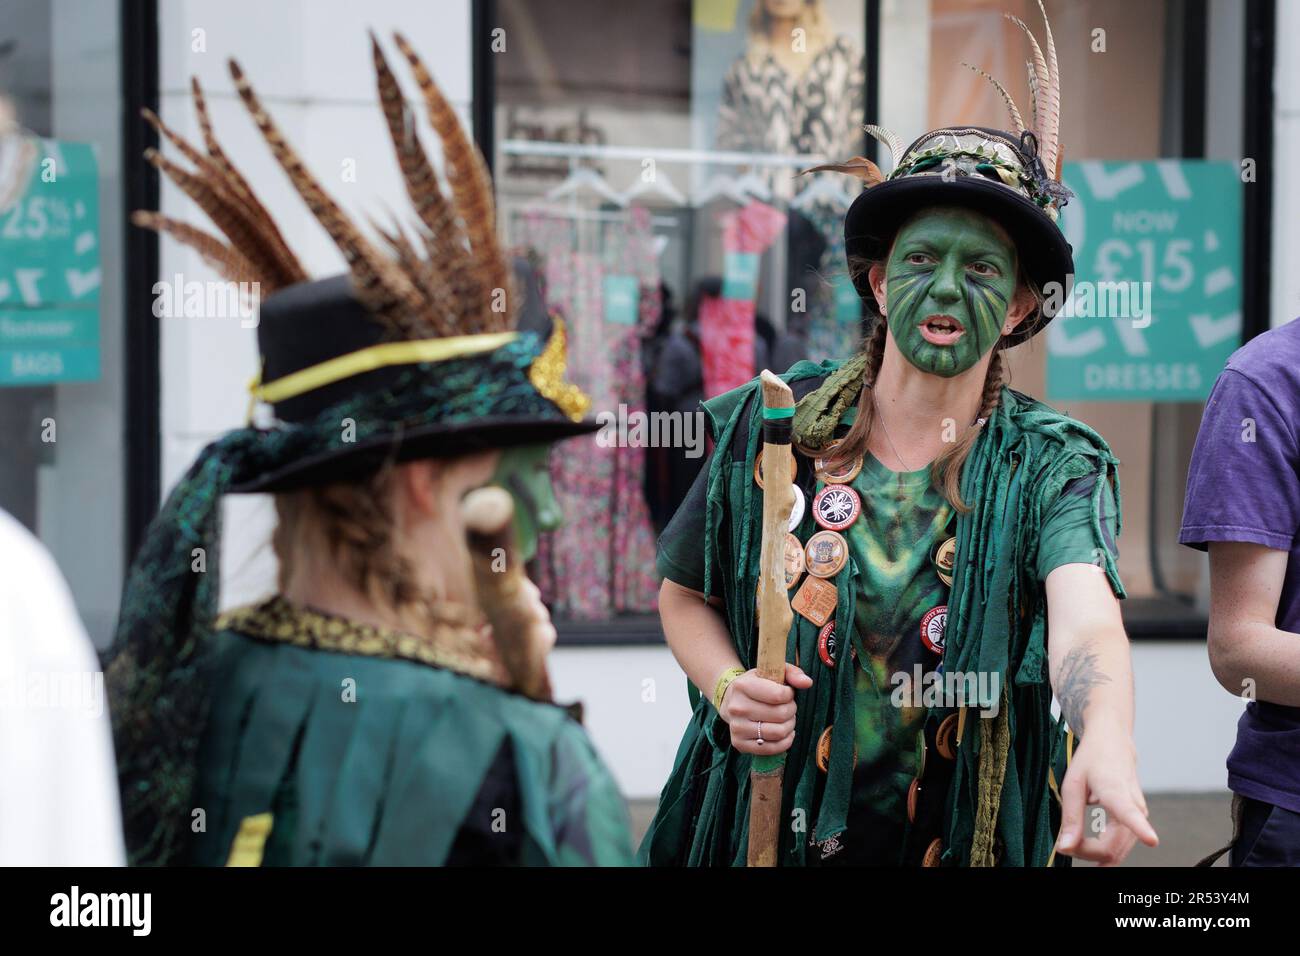 Folkloremusik, Clogdance, Morris-Tänzer - farbenfrohe Szenen vom Chippenham Folk Festival an einem sonnigen Tag im Island Park und der Borough Parade in Wiltshire Stockfoto